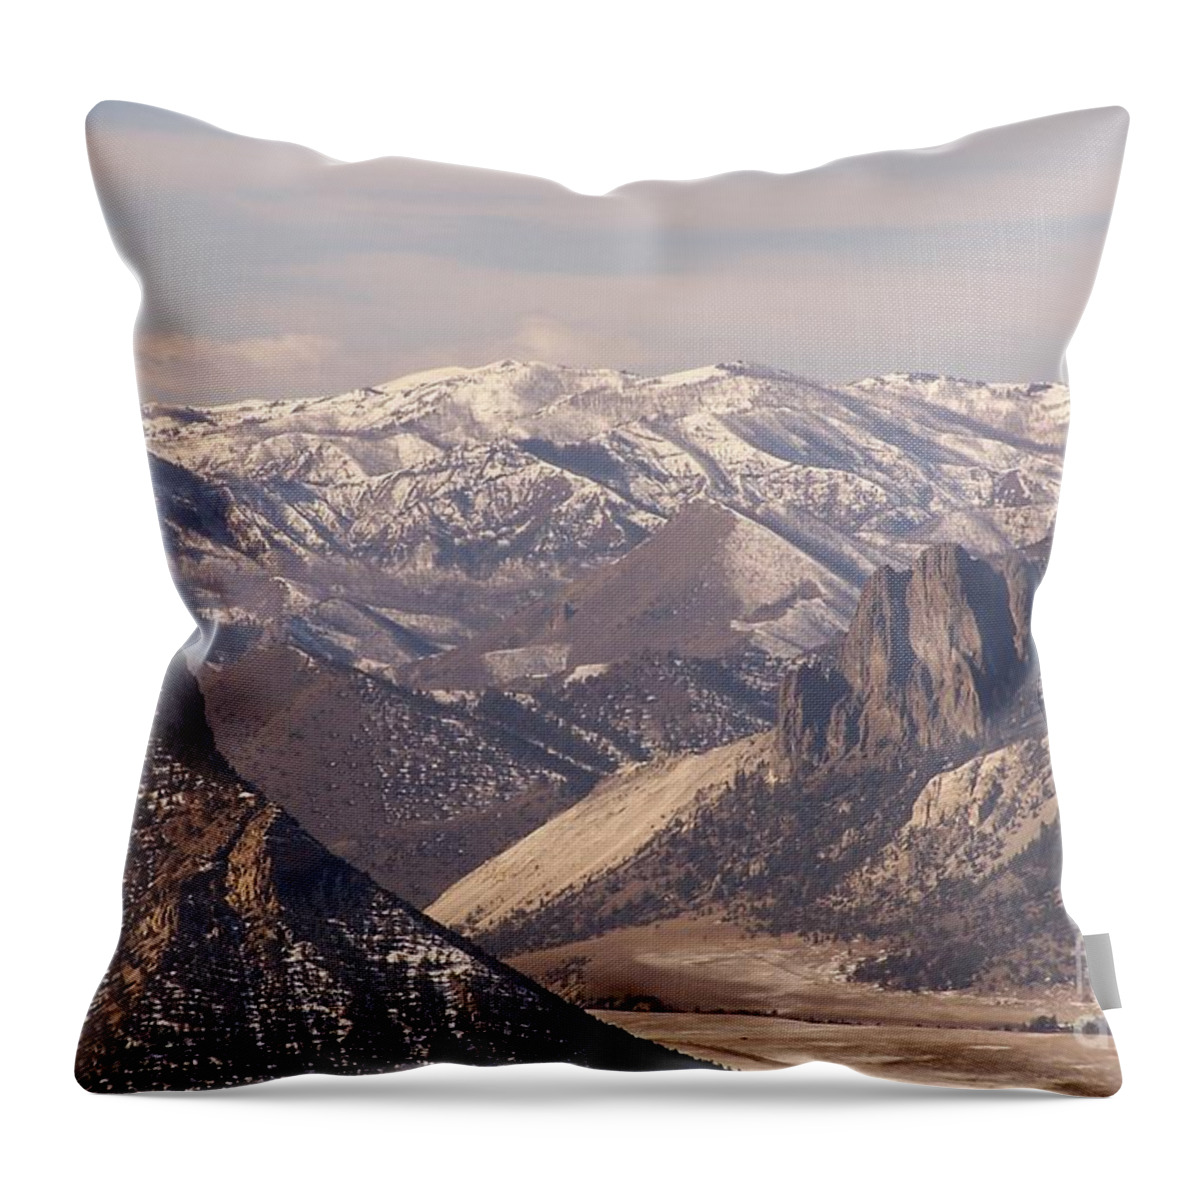 Mountains Throw Pillow featuring the photograph Sunlight Splendor by Dorrene BrownButterfield